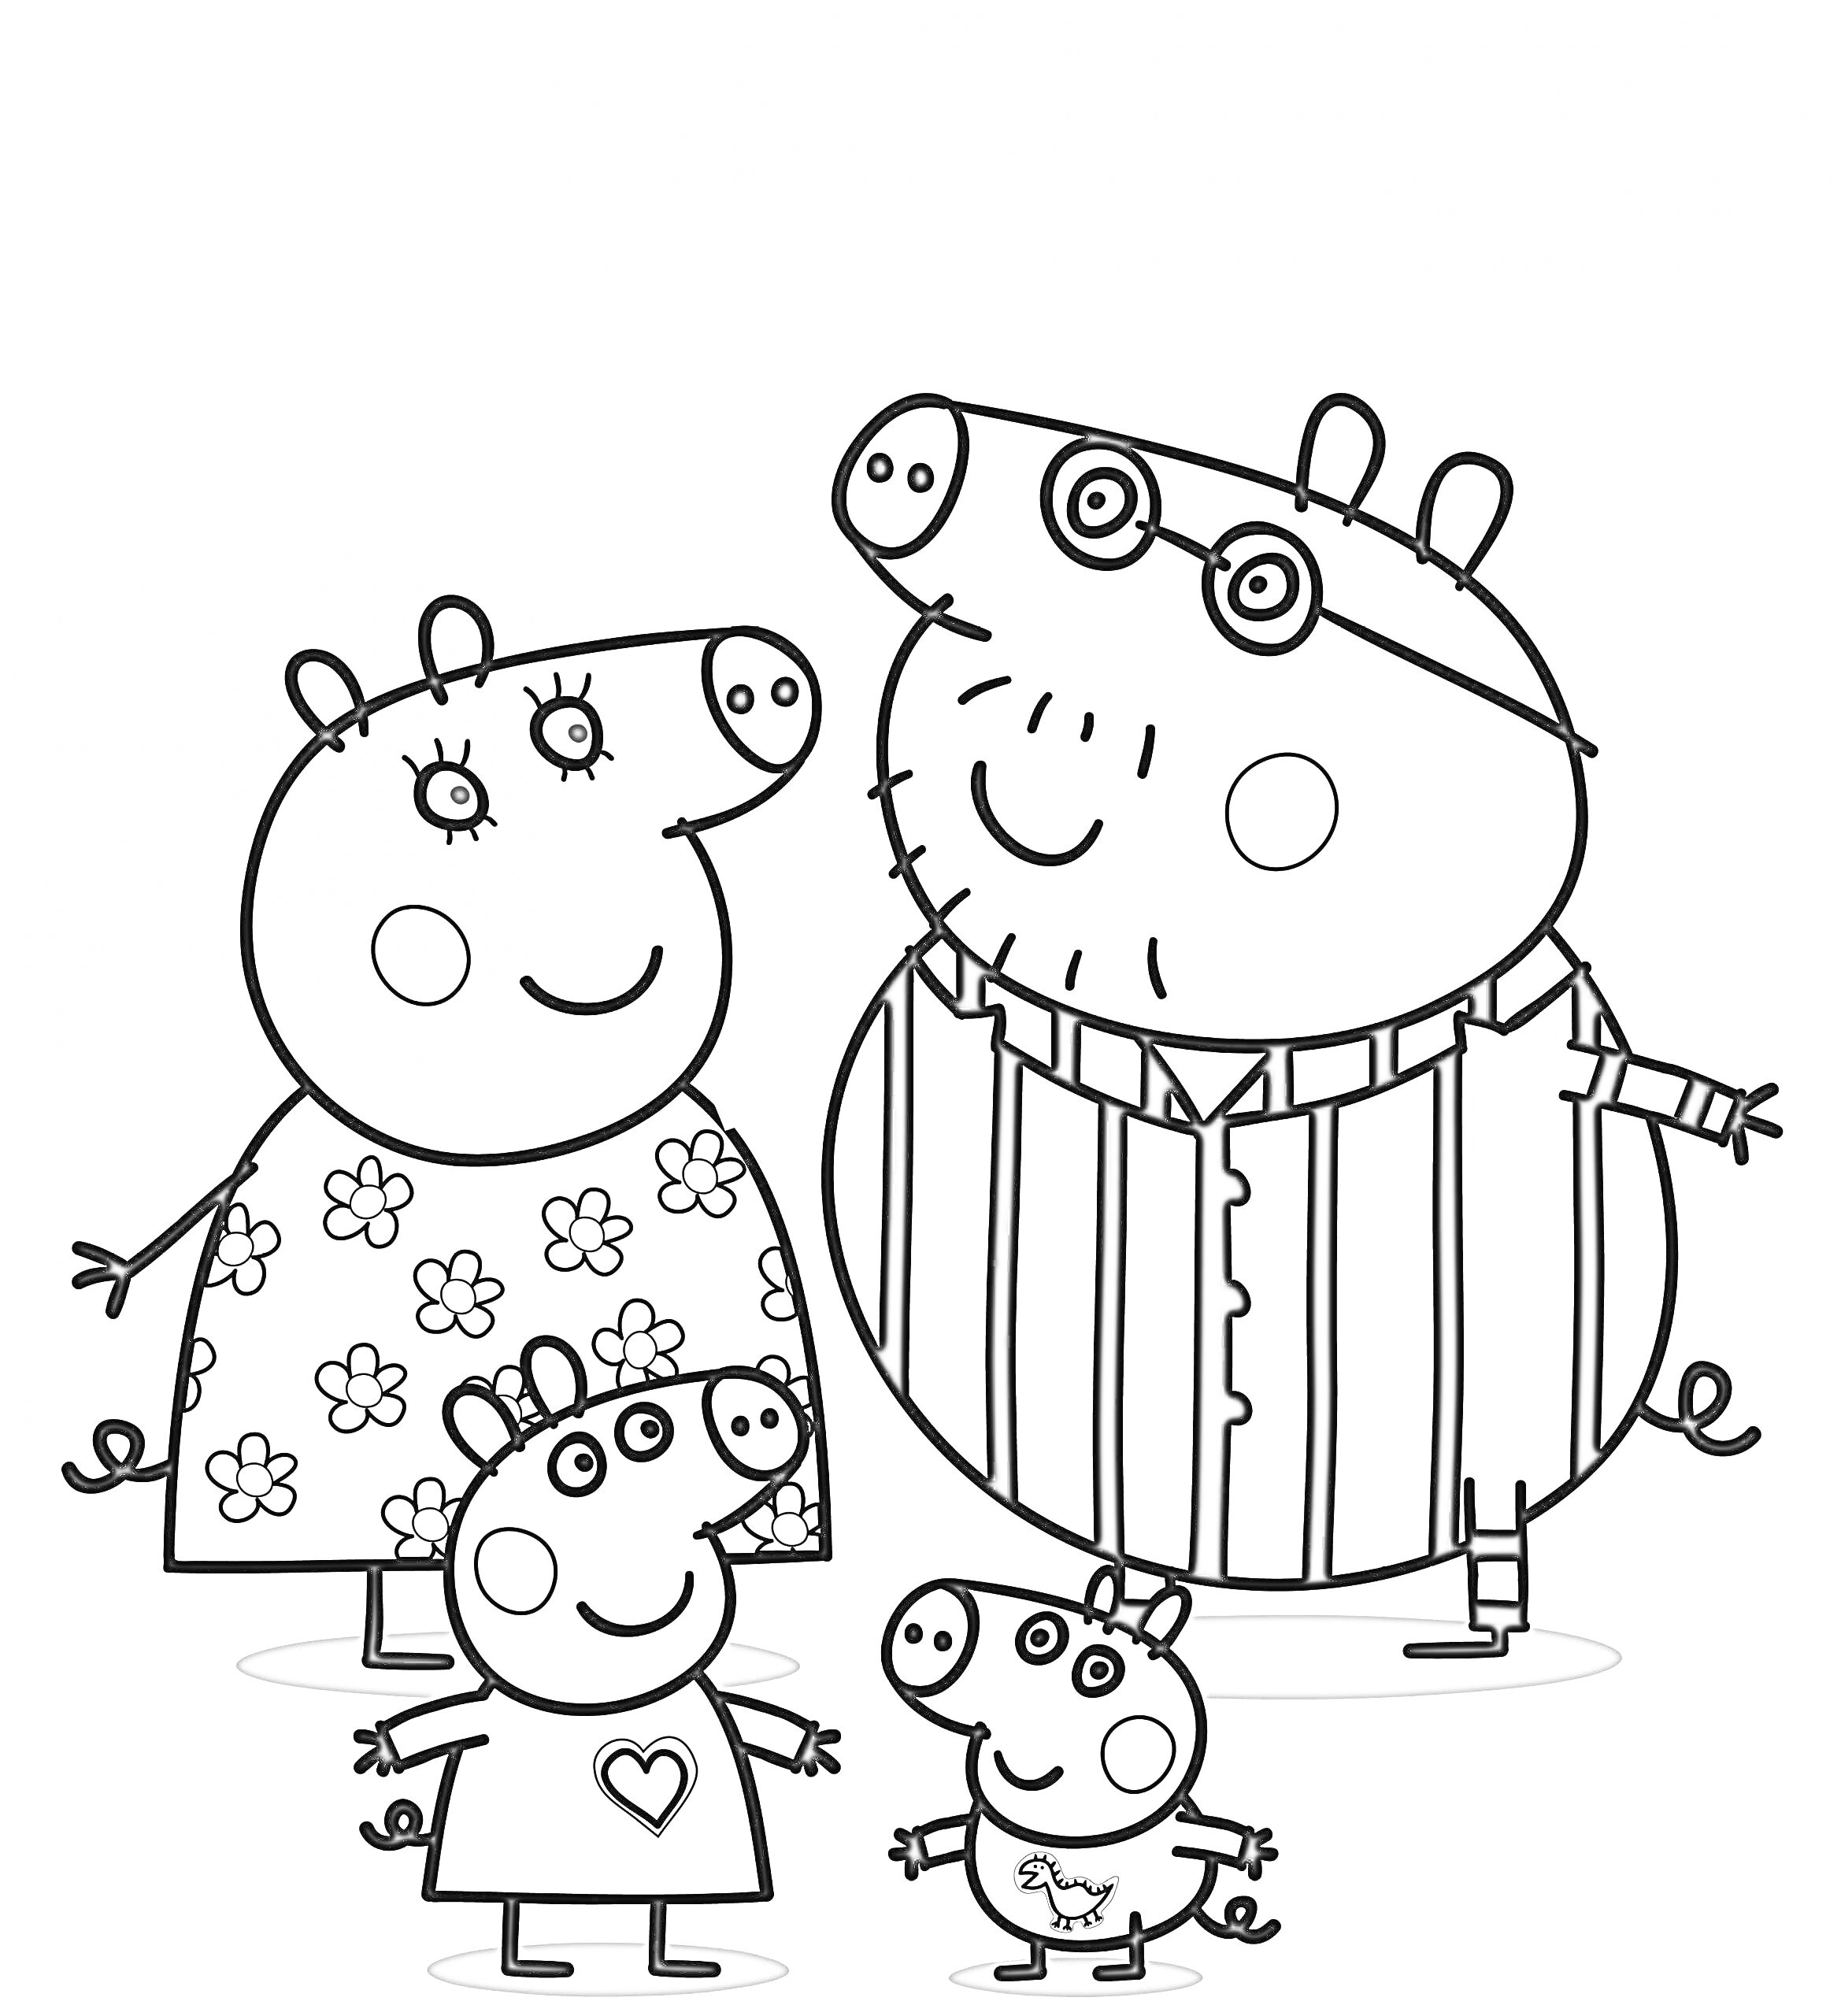 Свинка Пеппа с семьей на прогулке: Свинка Пеппа, Папа Свин в полосатой рубашке, Мама Свинка в цветастом платье, младший брат Джордж в футболке с динозавром, маленькая свинка в футболке с сердцем.